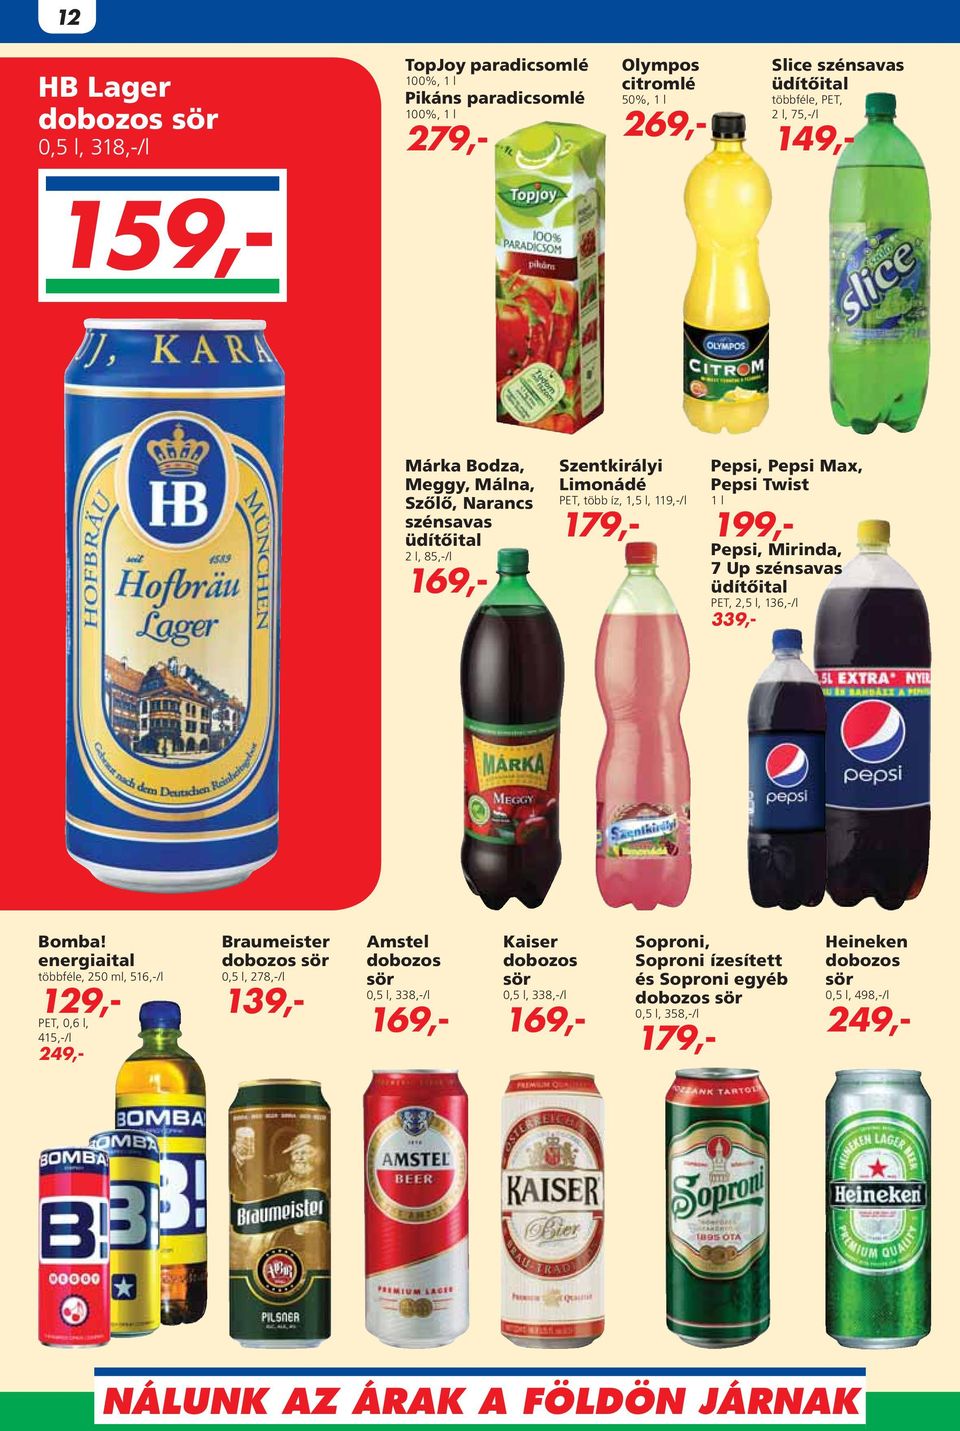 Pepsi, Mirinda, 7 Up szénsavas üdítôital PET, 2,5 l, 136,-/l 339,- Bomba!